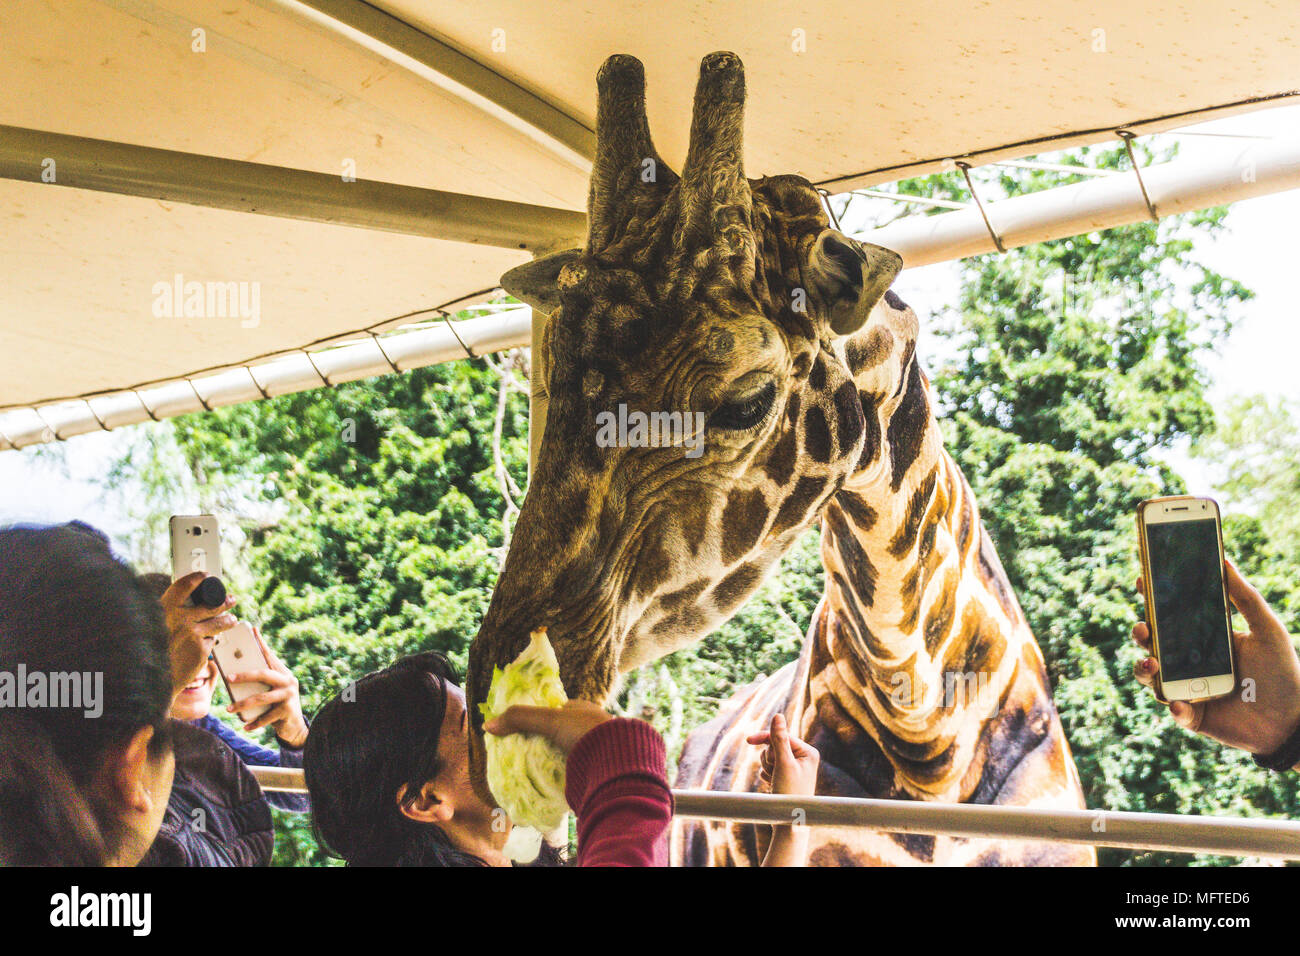 Monterrey, Nuevo León/ México - 4/8/2018: [photograph of a giraffe poking its head in a safari truck in Bioparque Estrella] Stock Photo